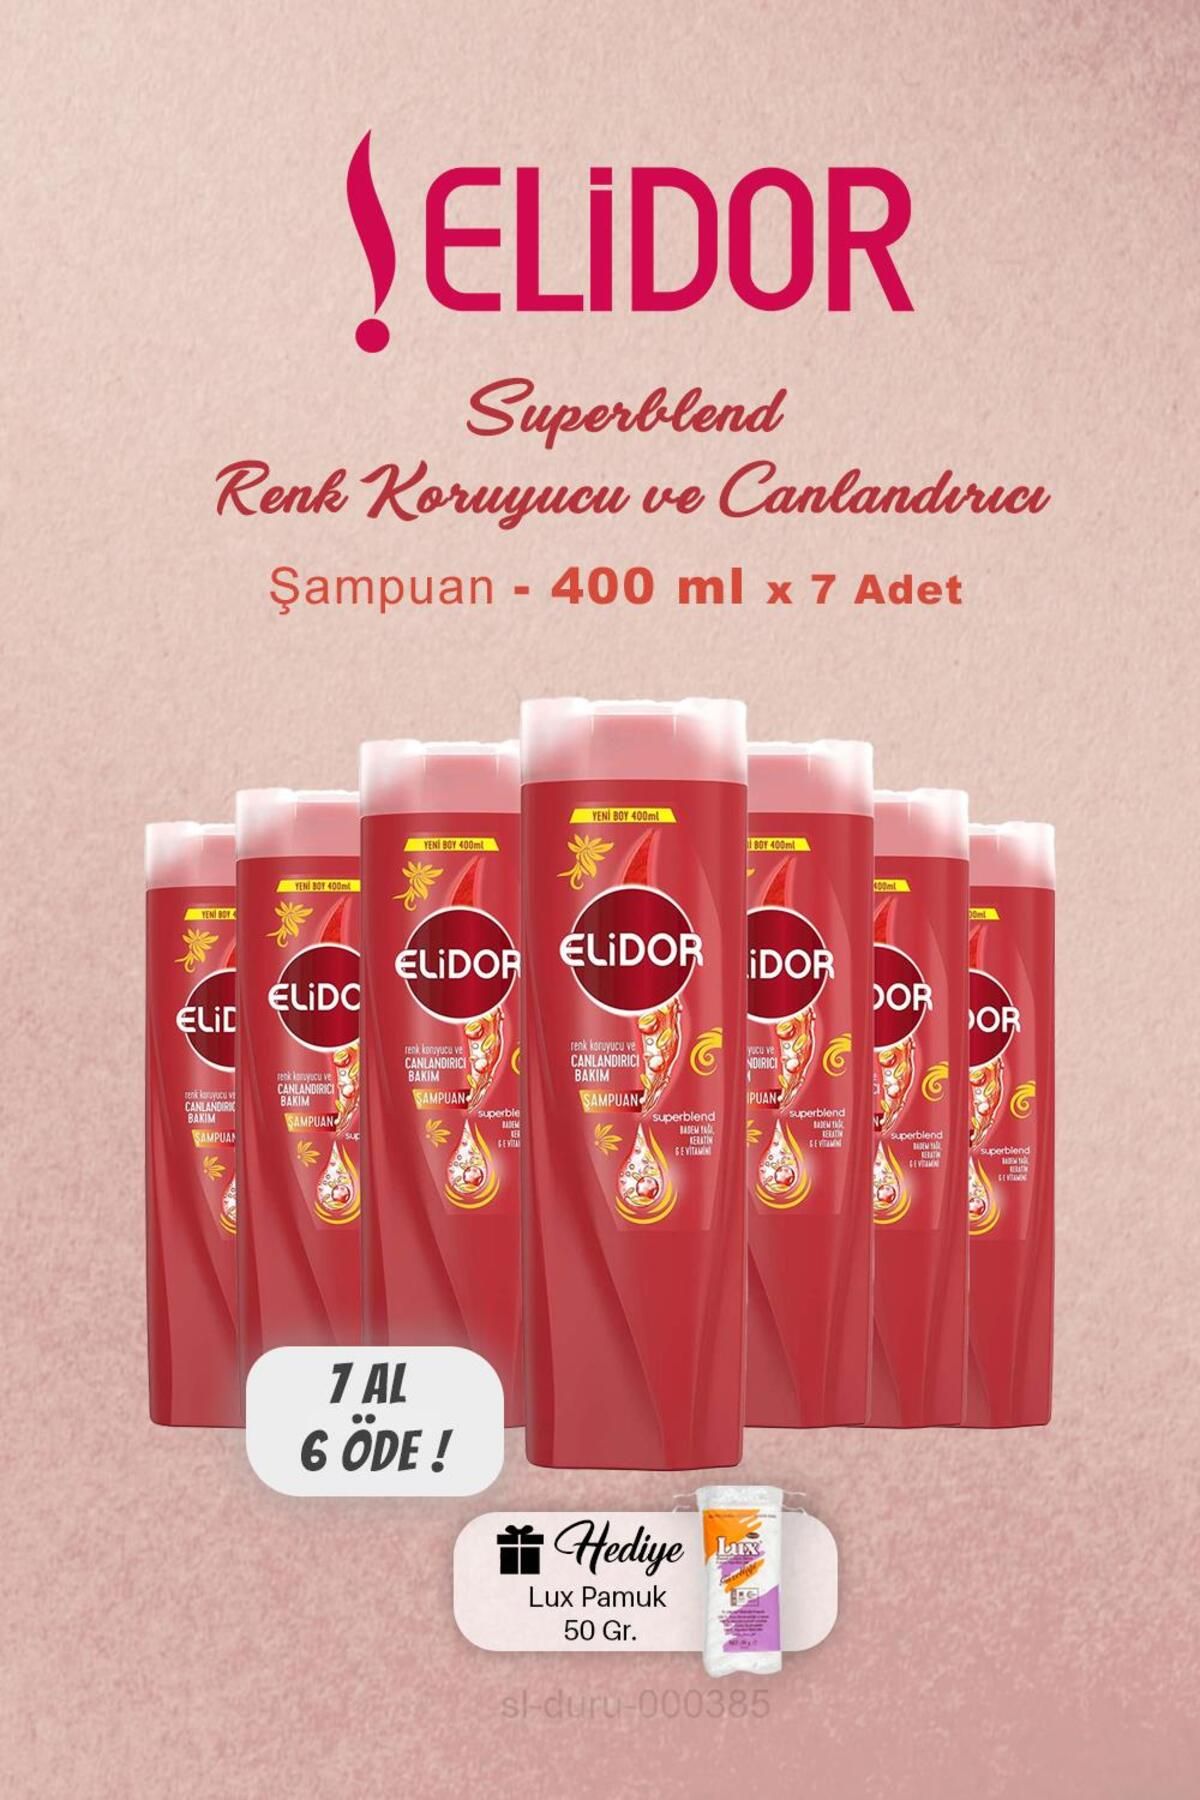 Elidor 7 AL 6 ÖDE Elidor Şampuan Renk Koruyucu Canlandırıcı 400 ml, Pamuk Hediyeli